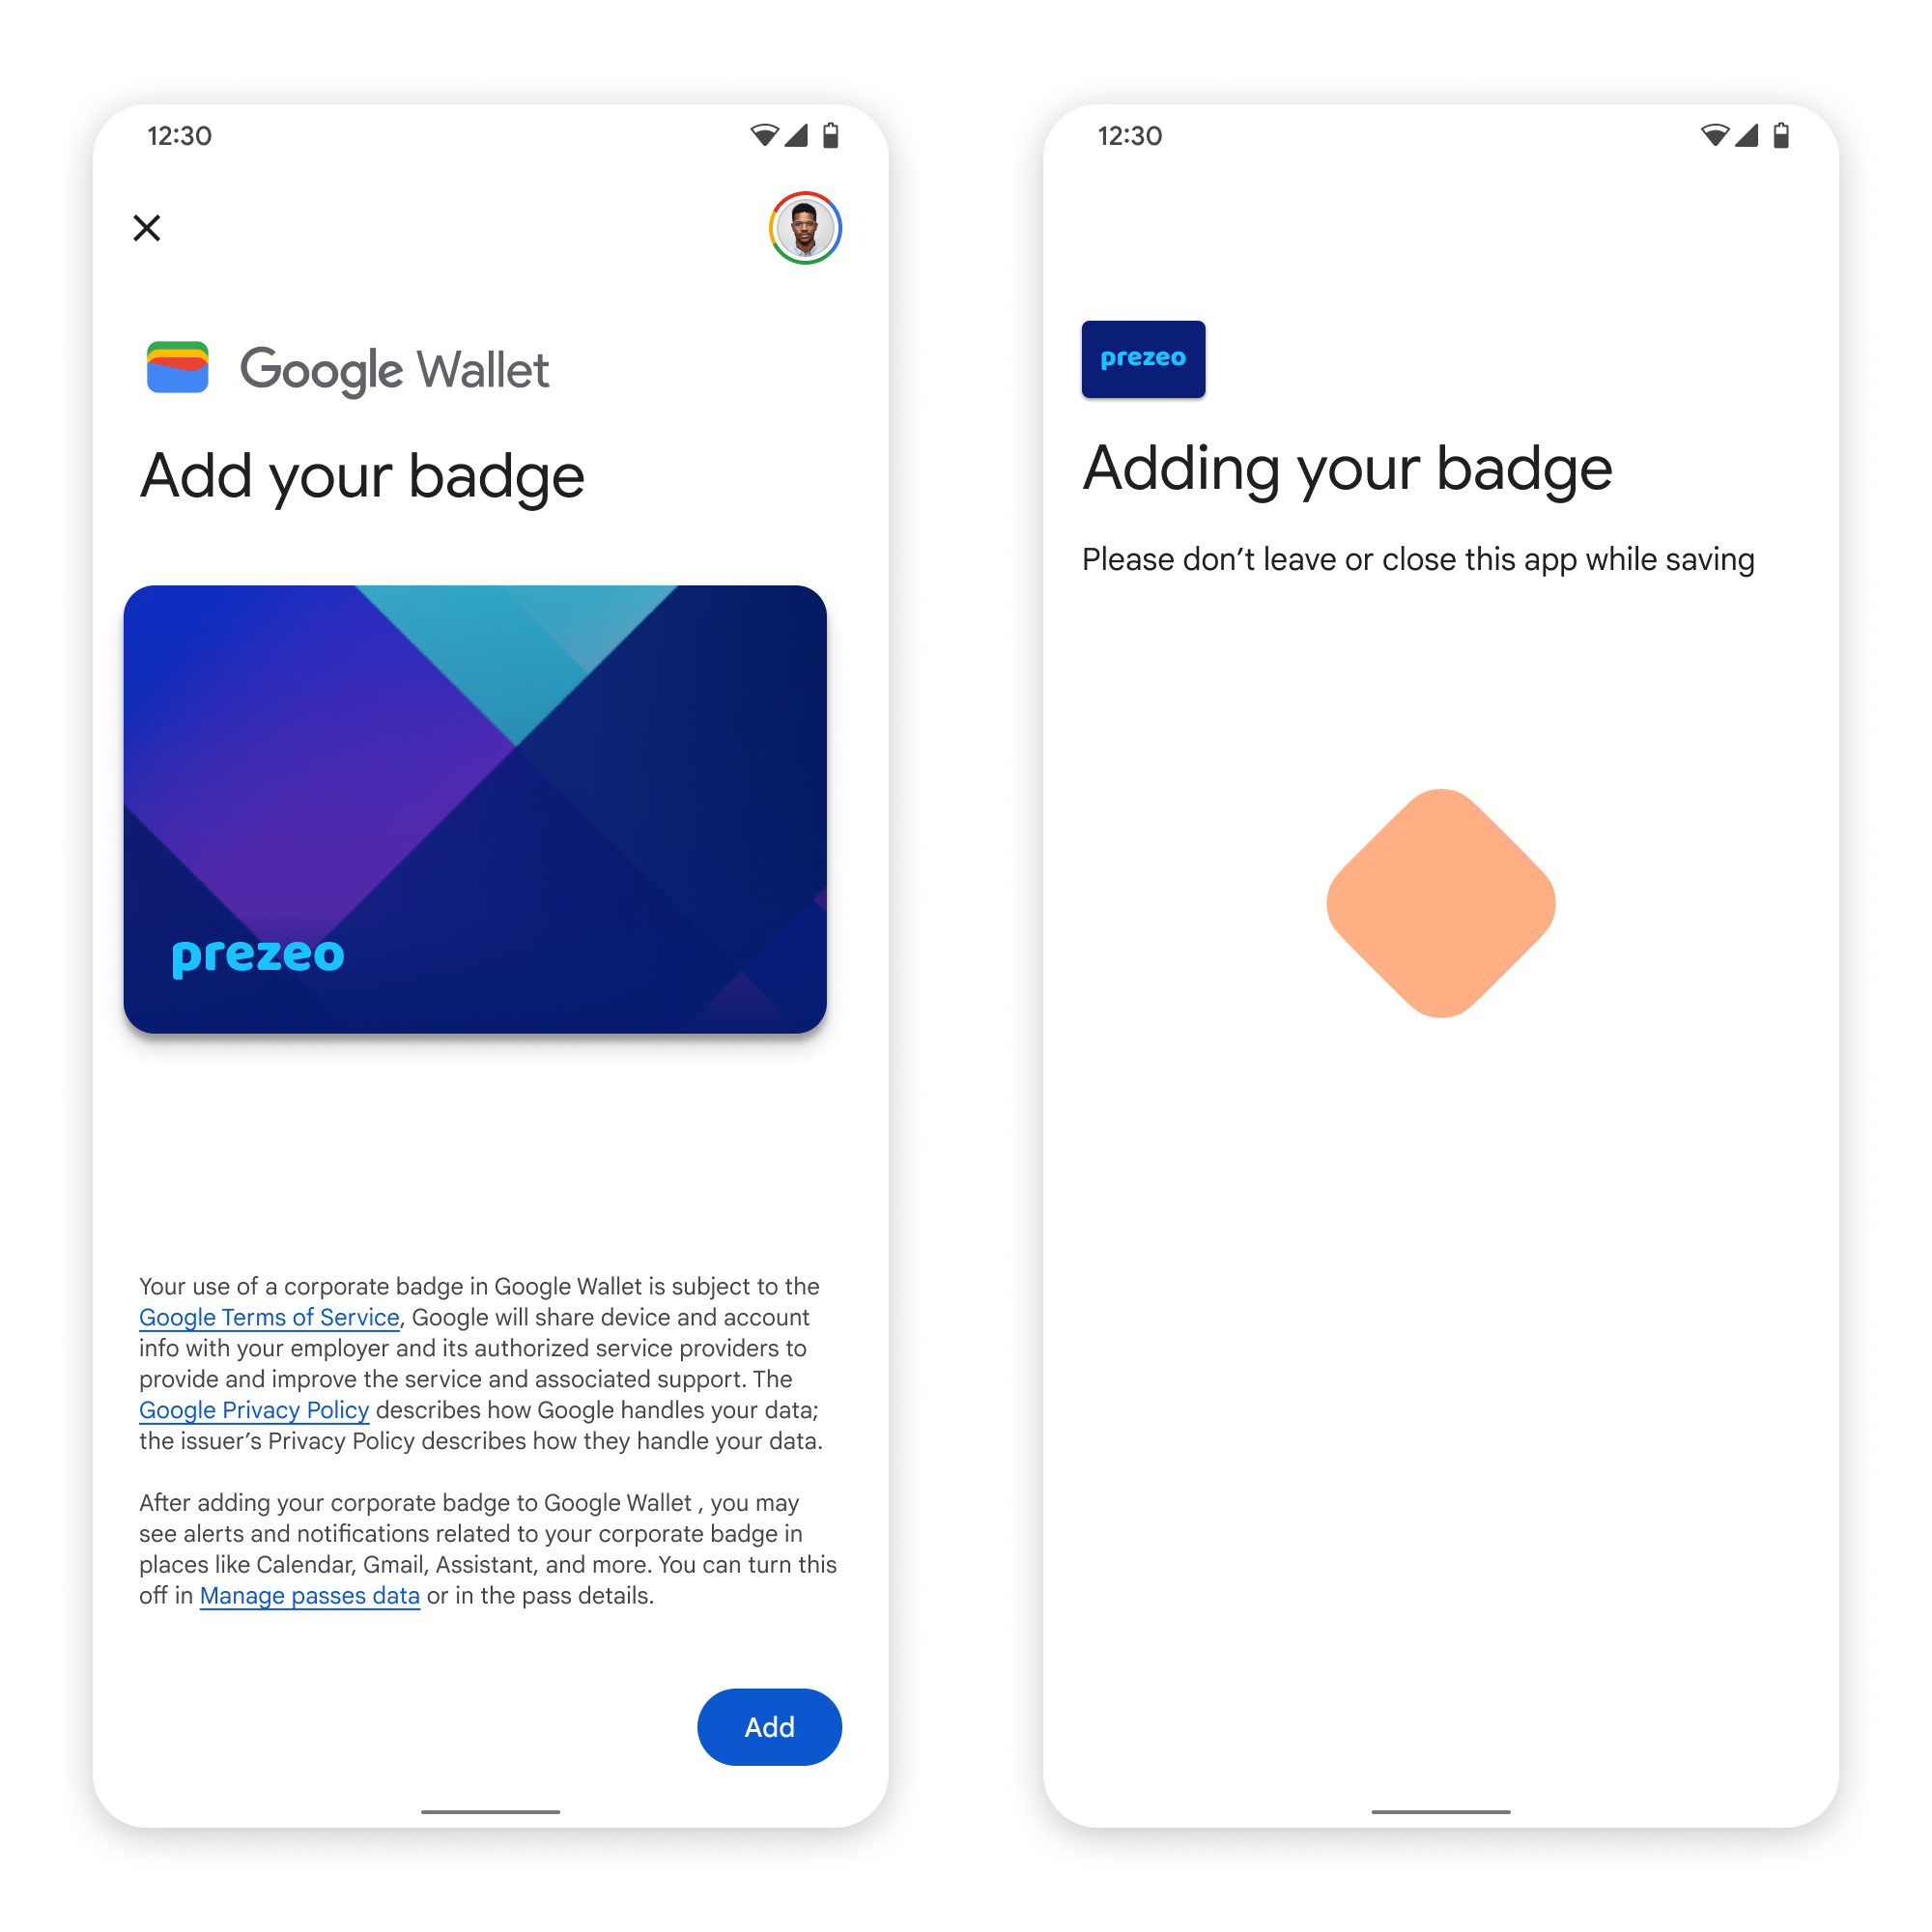 पहली स्क्रीन पर, ऐप्लिकेशन को Google Wallet से कनेक्ट कर दिया गया है. तय सीमा में
       दूसरी स्क्रीन पर, उपयोगकर्ता सेवा की शर्तें स्वीकार करता है और आगे बढ़ जाता है.